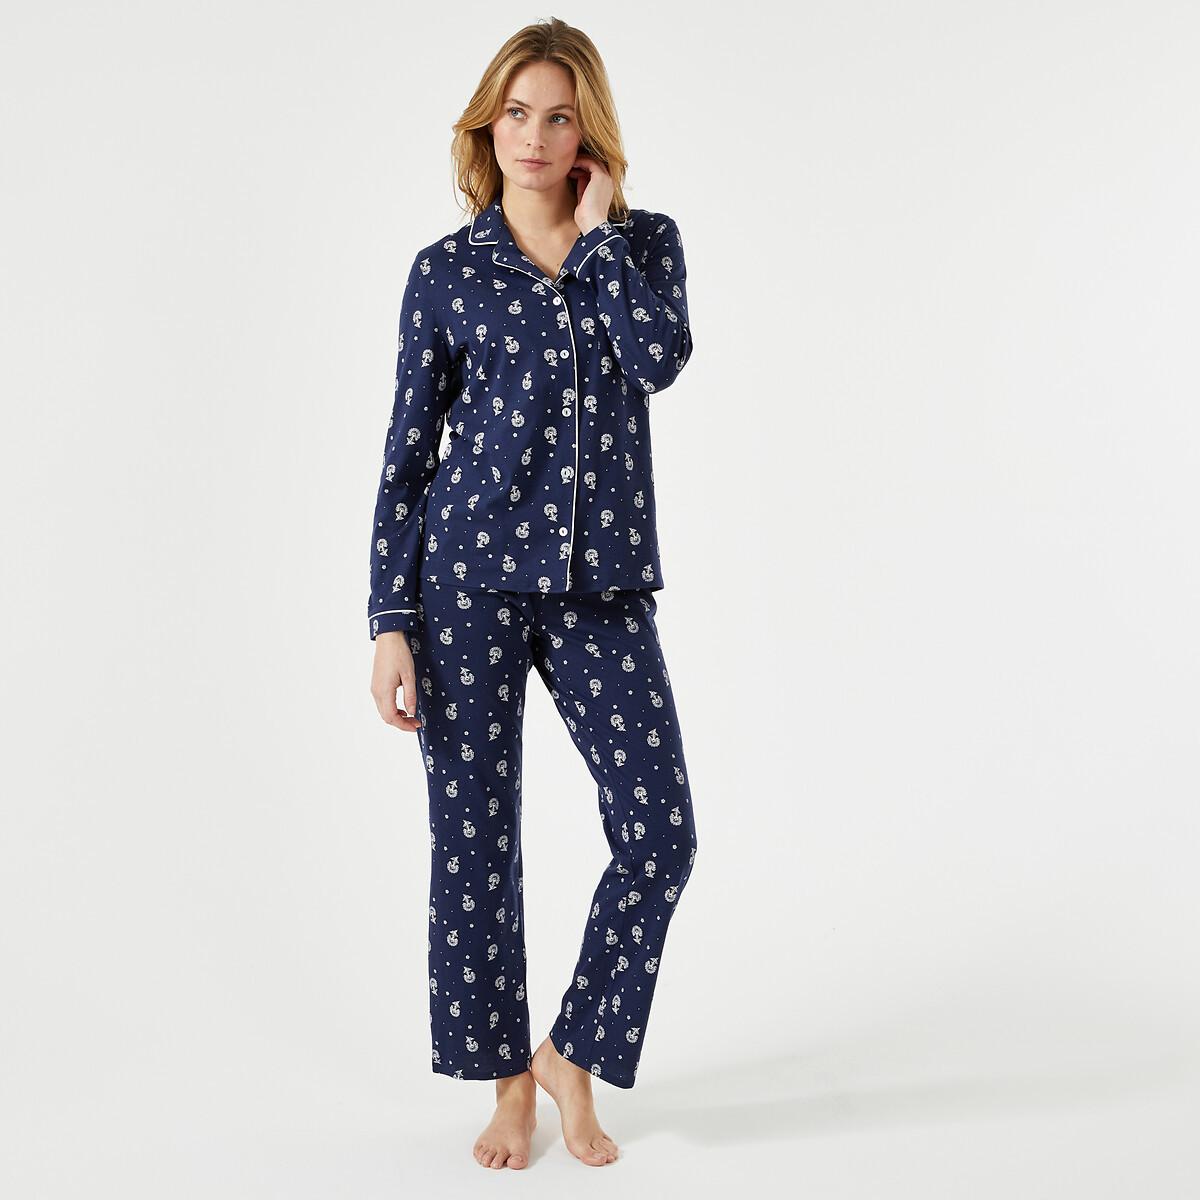 Bedruckter Pyjama Mit Langen Ärmeln Damen Weiss Bedruckt 54 von La Redoute Collections